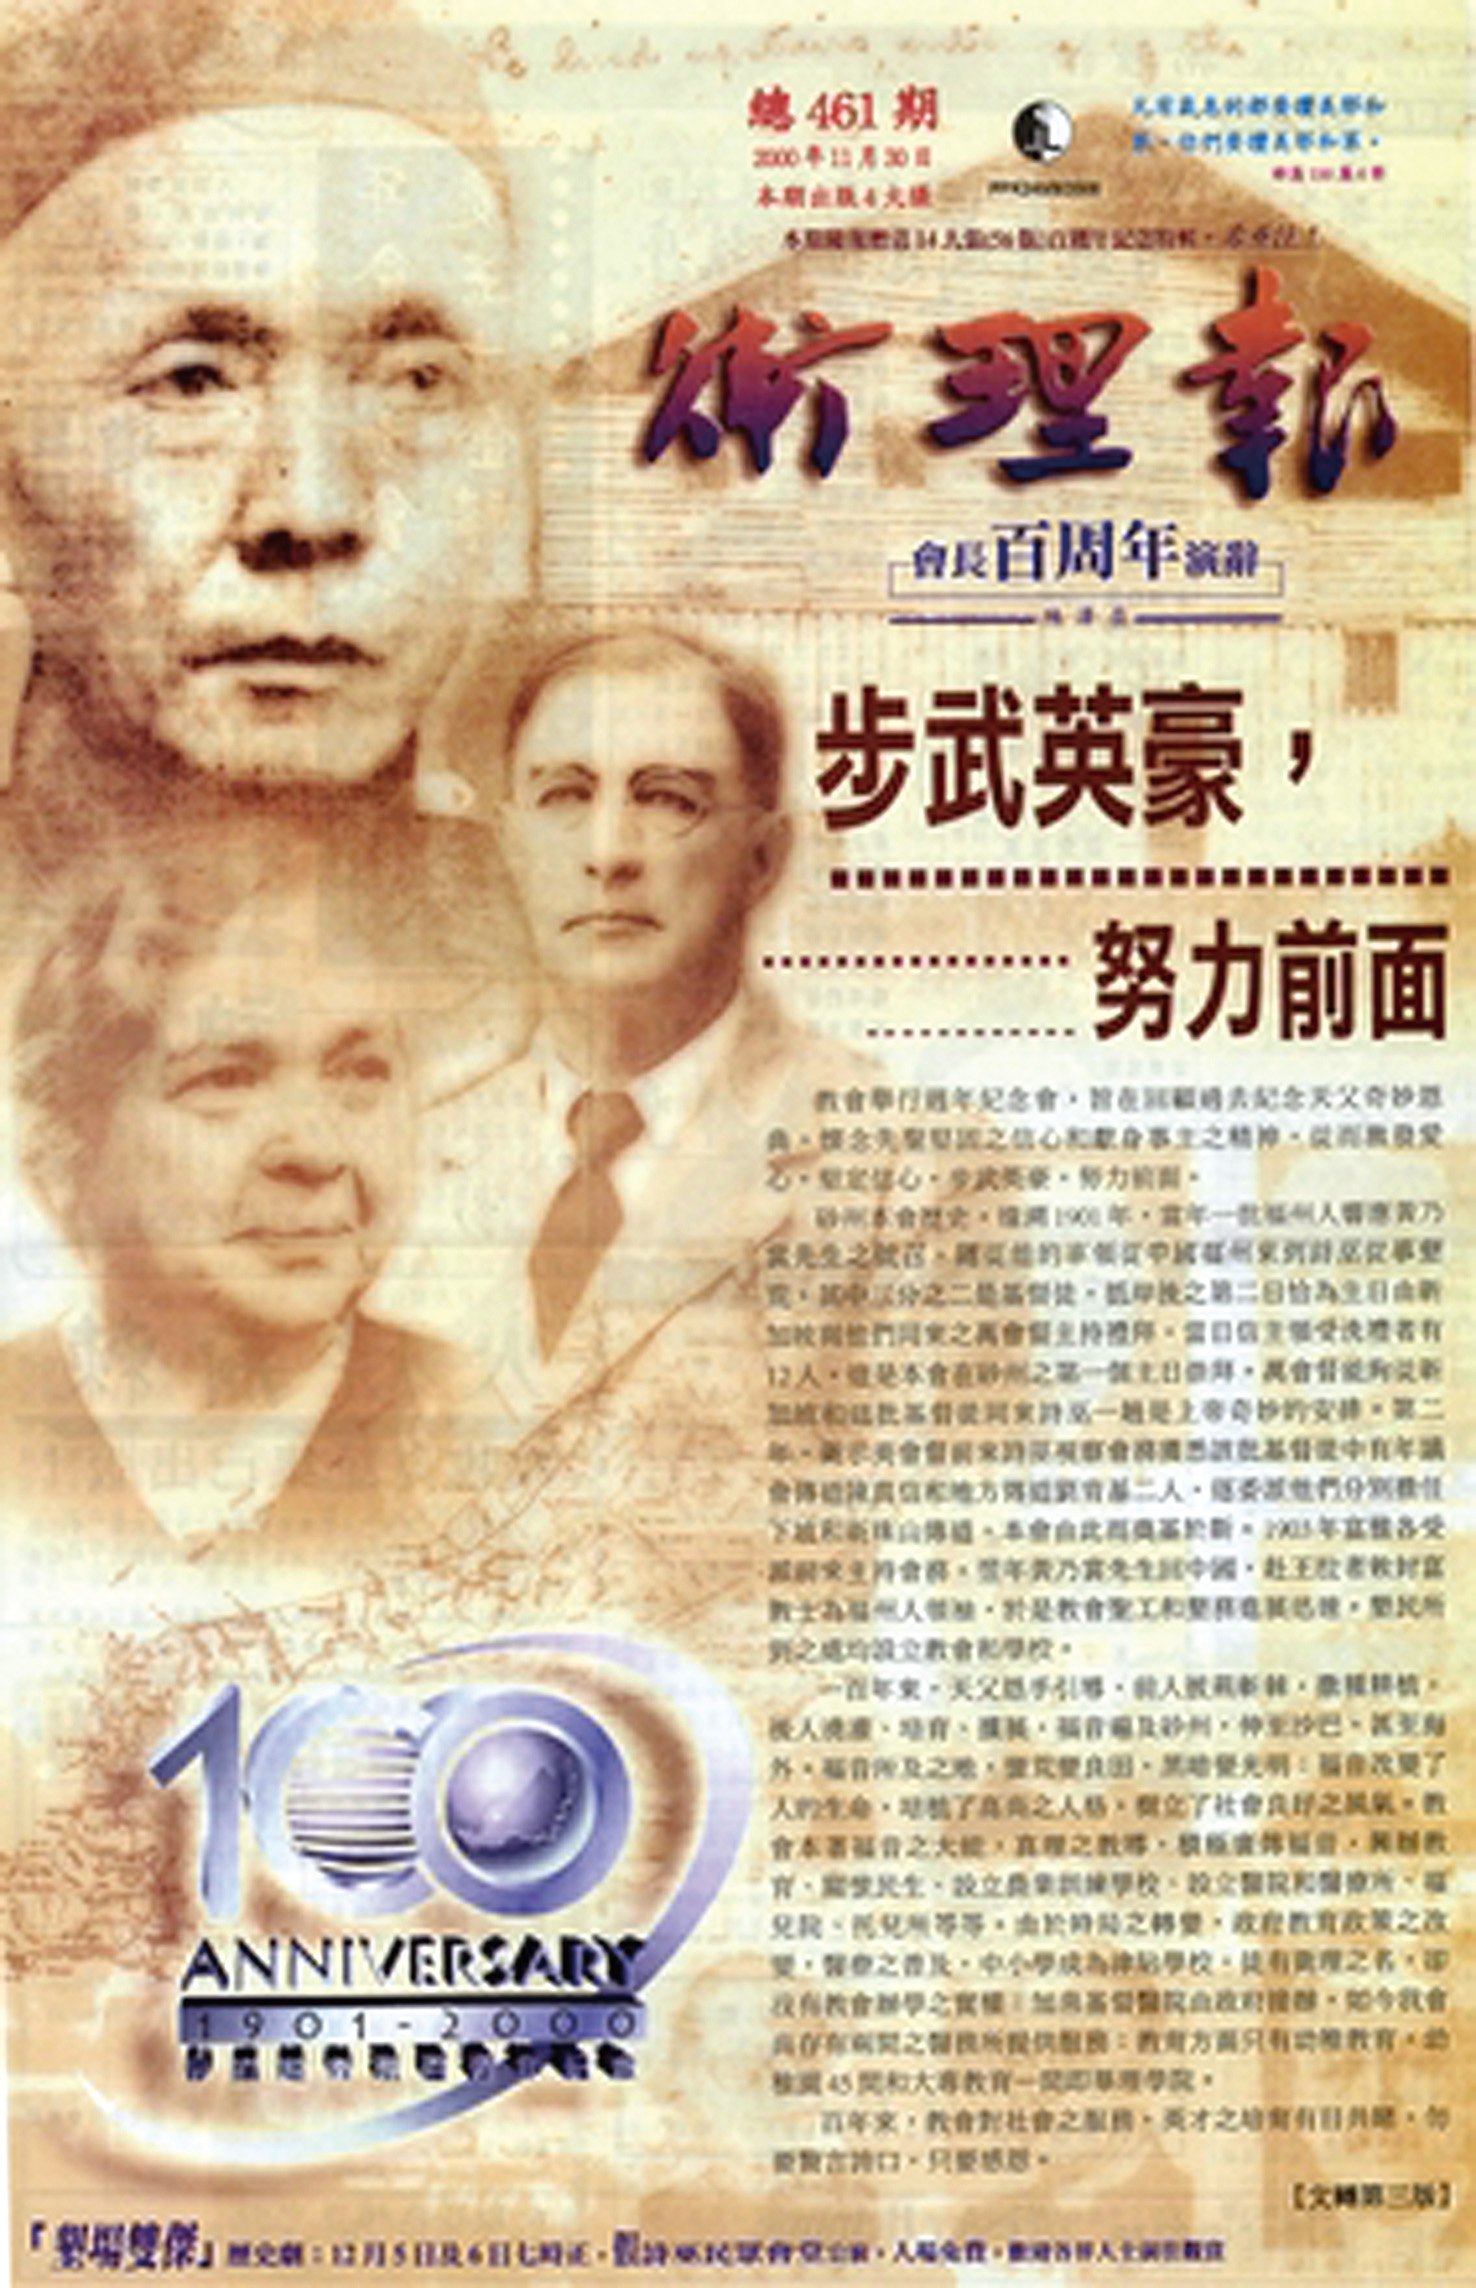 《衛理報》於2000年設計百周年紀念刊。